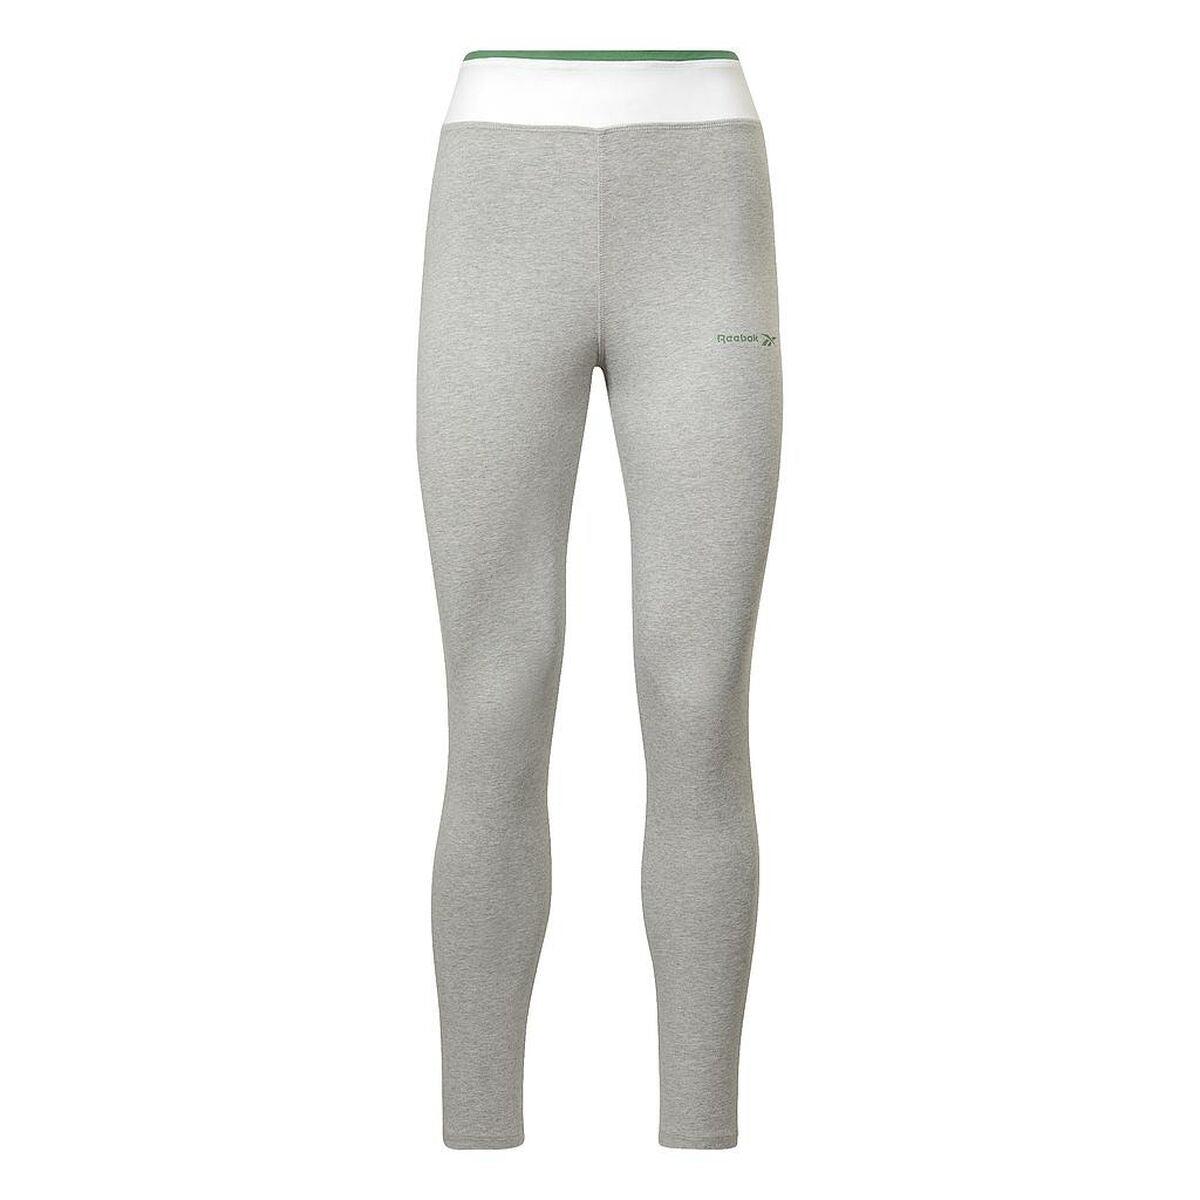 Reebok Sport leggings For Women Graphic Tankrie Ht6263 Grey in Gray | Lyst